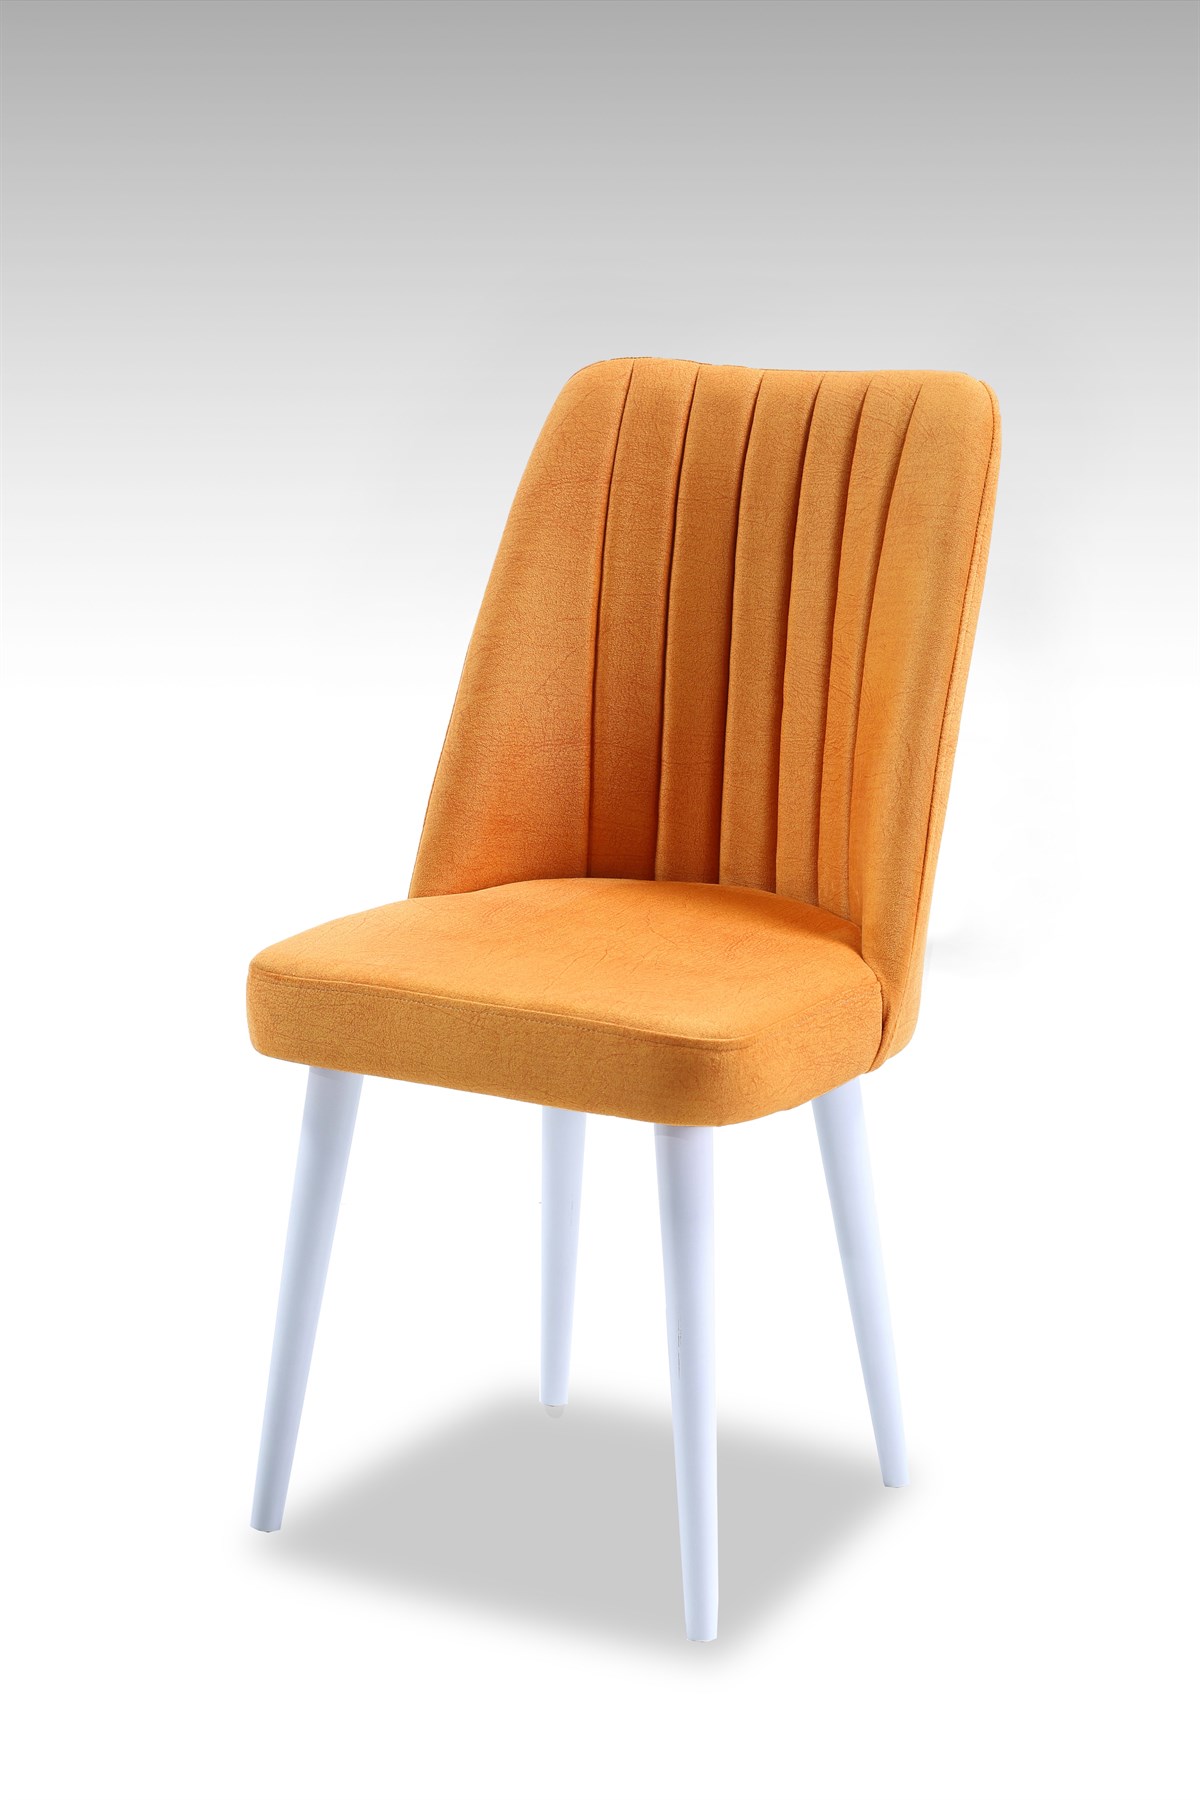 Polo Sandalye - Ahşap Beyaz Ayaklı - 12 Renk Seçeneği - Nubuk Kumaş-Sarı